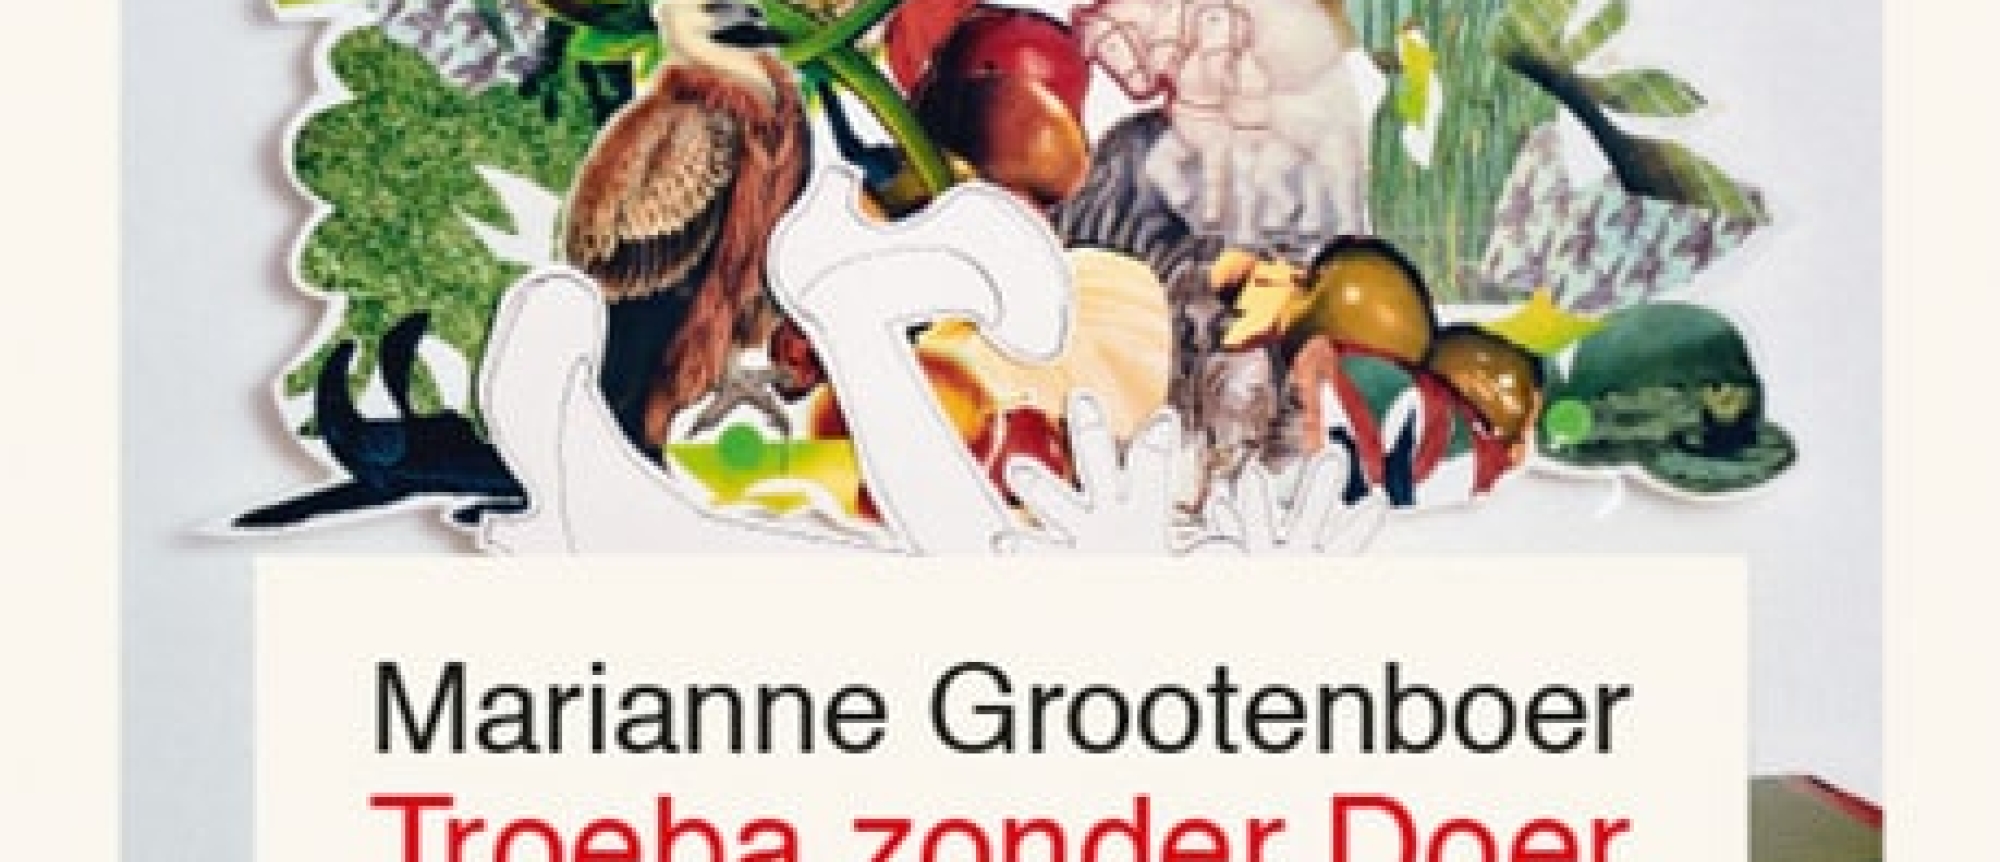 Boekpresentatie Marianne Grootenboer: Troeba zonder Doer